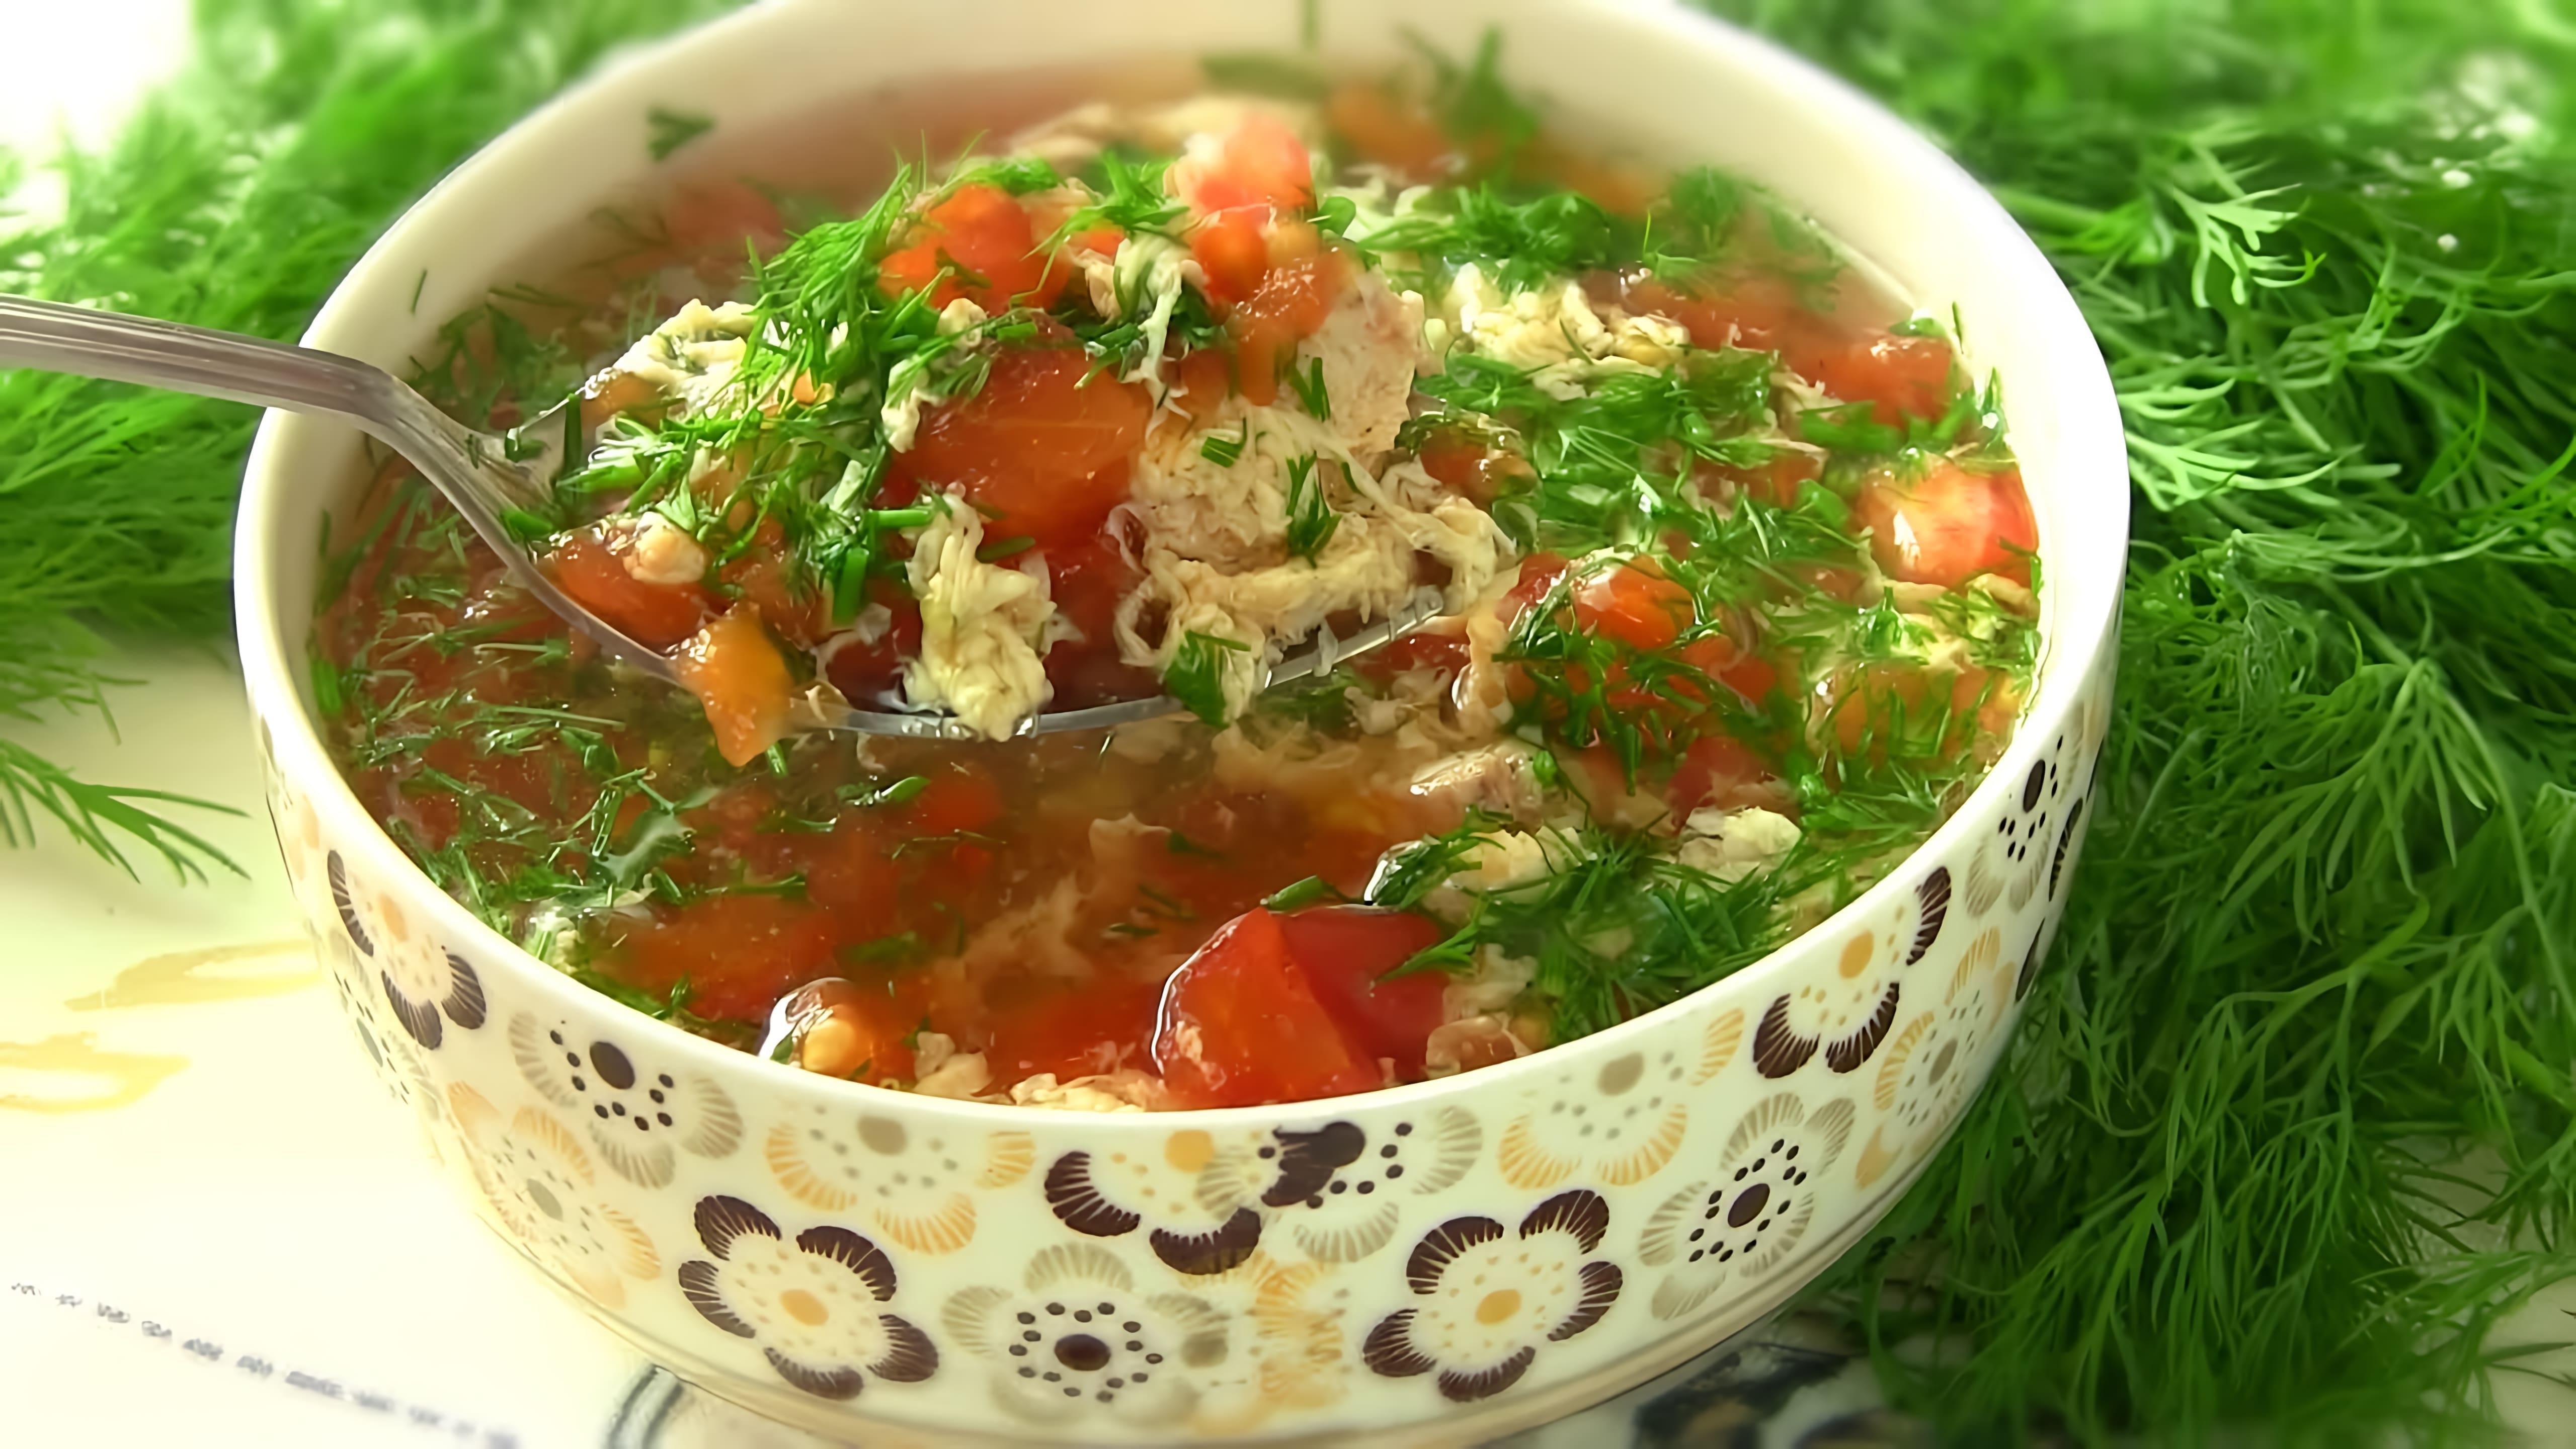 В этом видео демонстрируется процесс приготовления низкокалорийного супа с помидорами